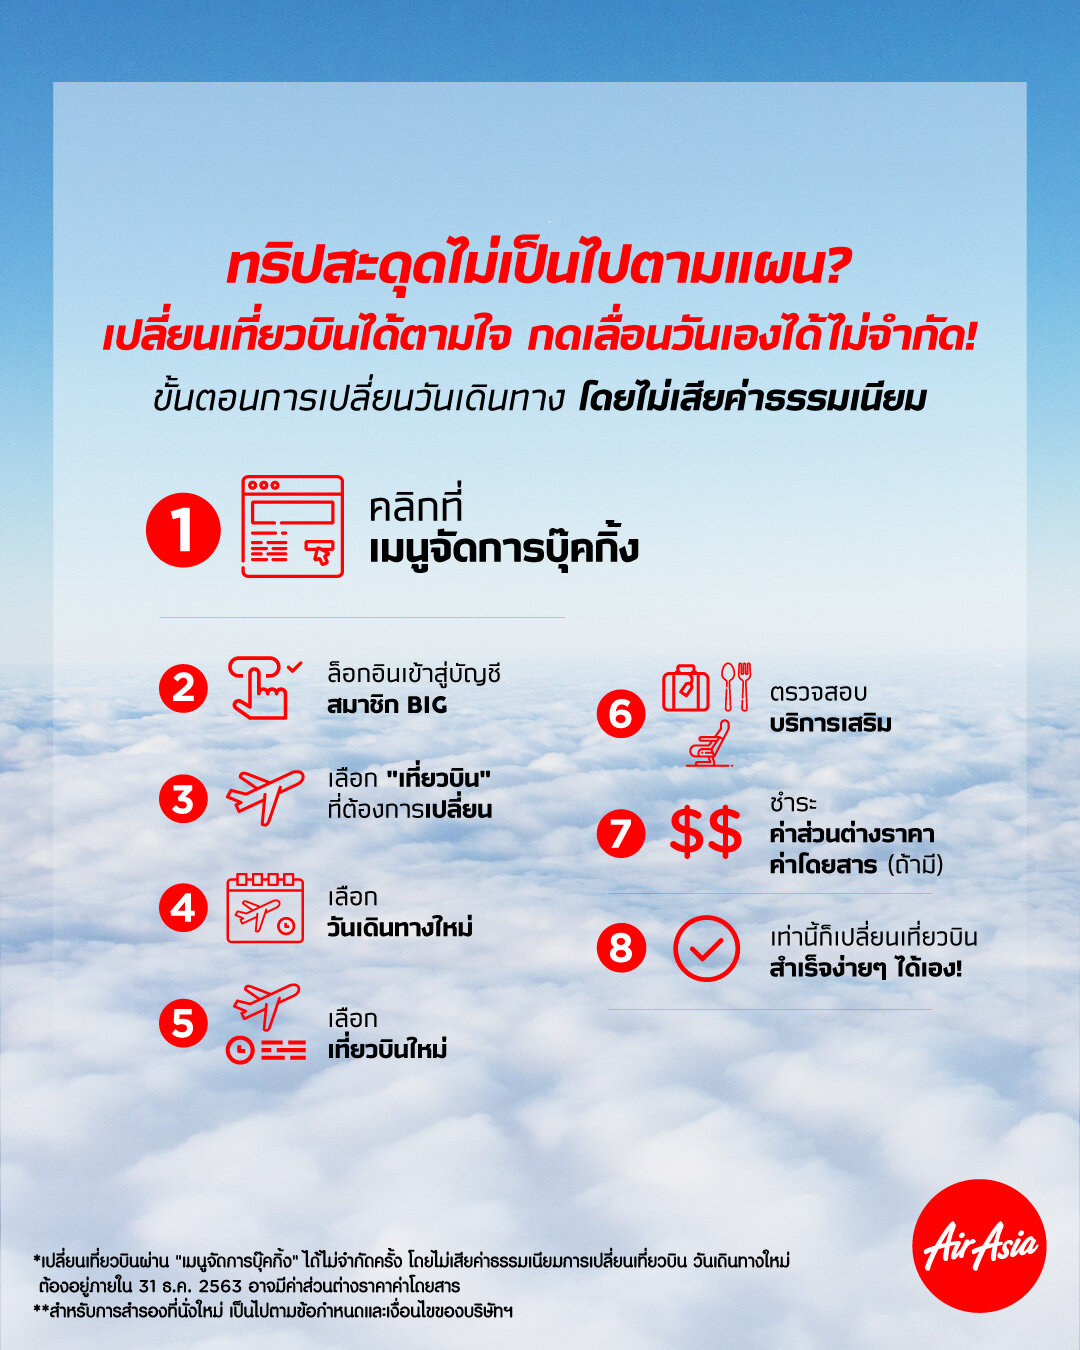 จองตั๋วแอร์เอเชีย บินถึง 31 ธ.ค.นี้ เปลี่ยนวันได้ไม่จำกัดครั้ง  ฟรีค่าธรรมเนียม! — Airasia Newsroom